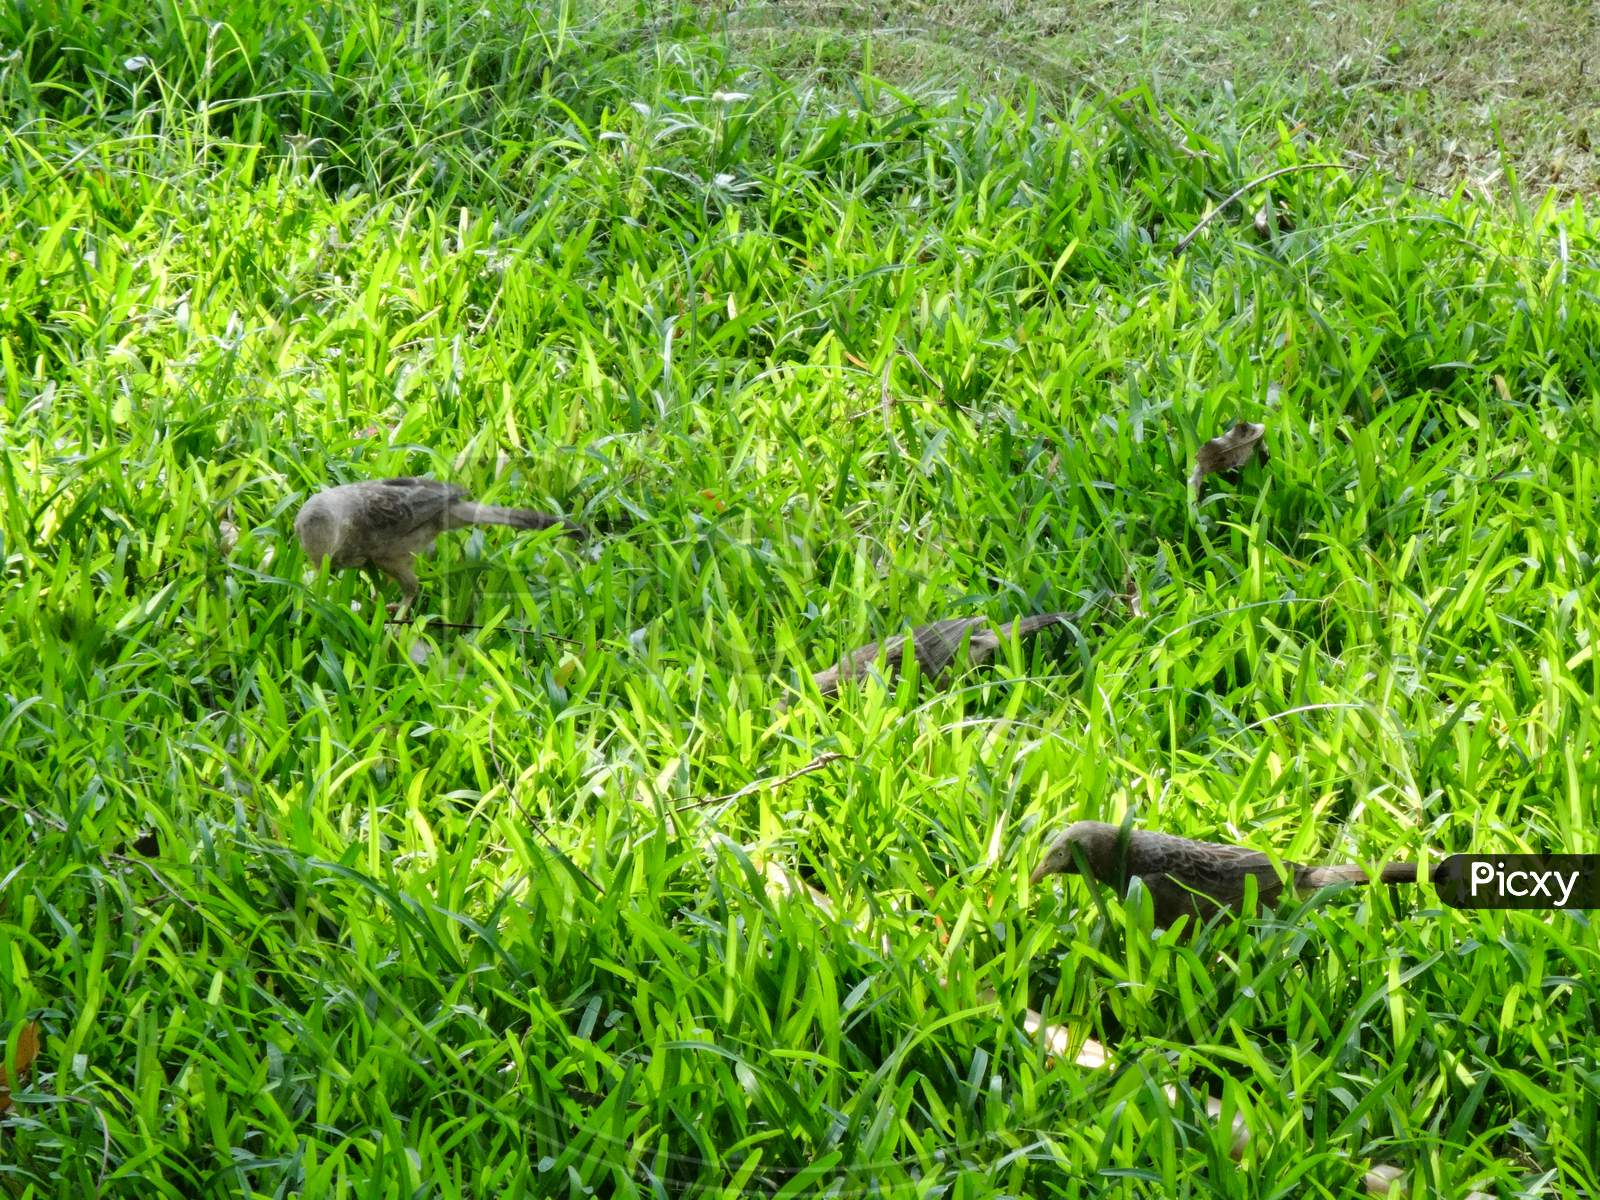 Beautiful green grass family groundcover vegetation wallpaper with little bird